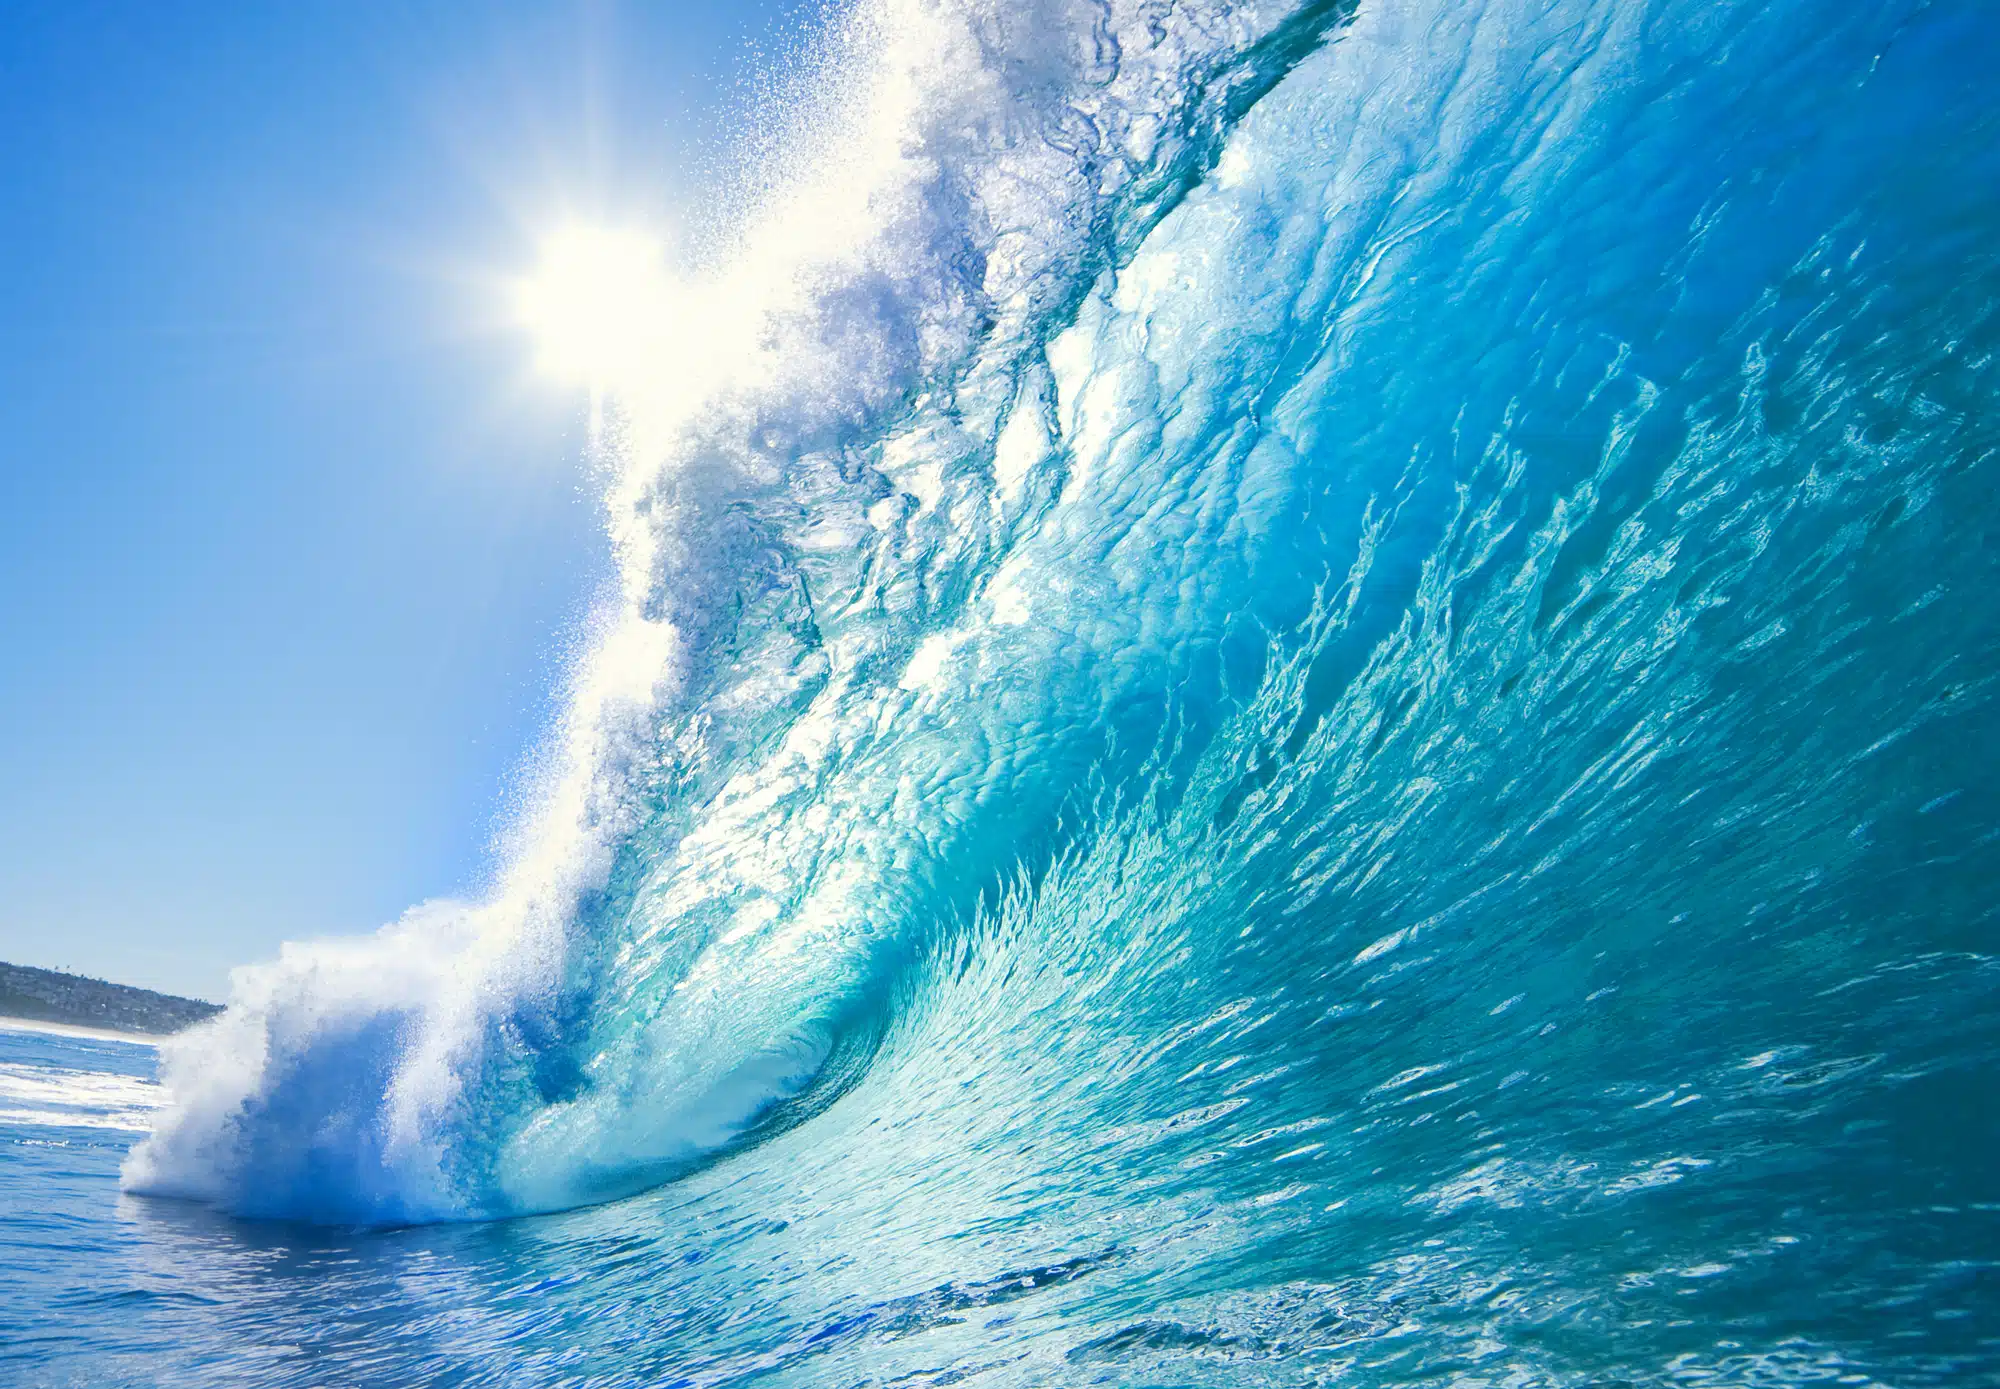 גלים באוקיאנוס שמתחיל לסבול ממחסור בחמצן.   <a href="https://depositphotos.com. ">המחשה: depositphotos.com</a>